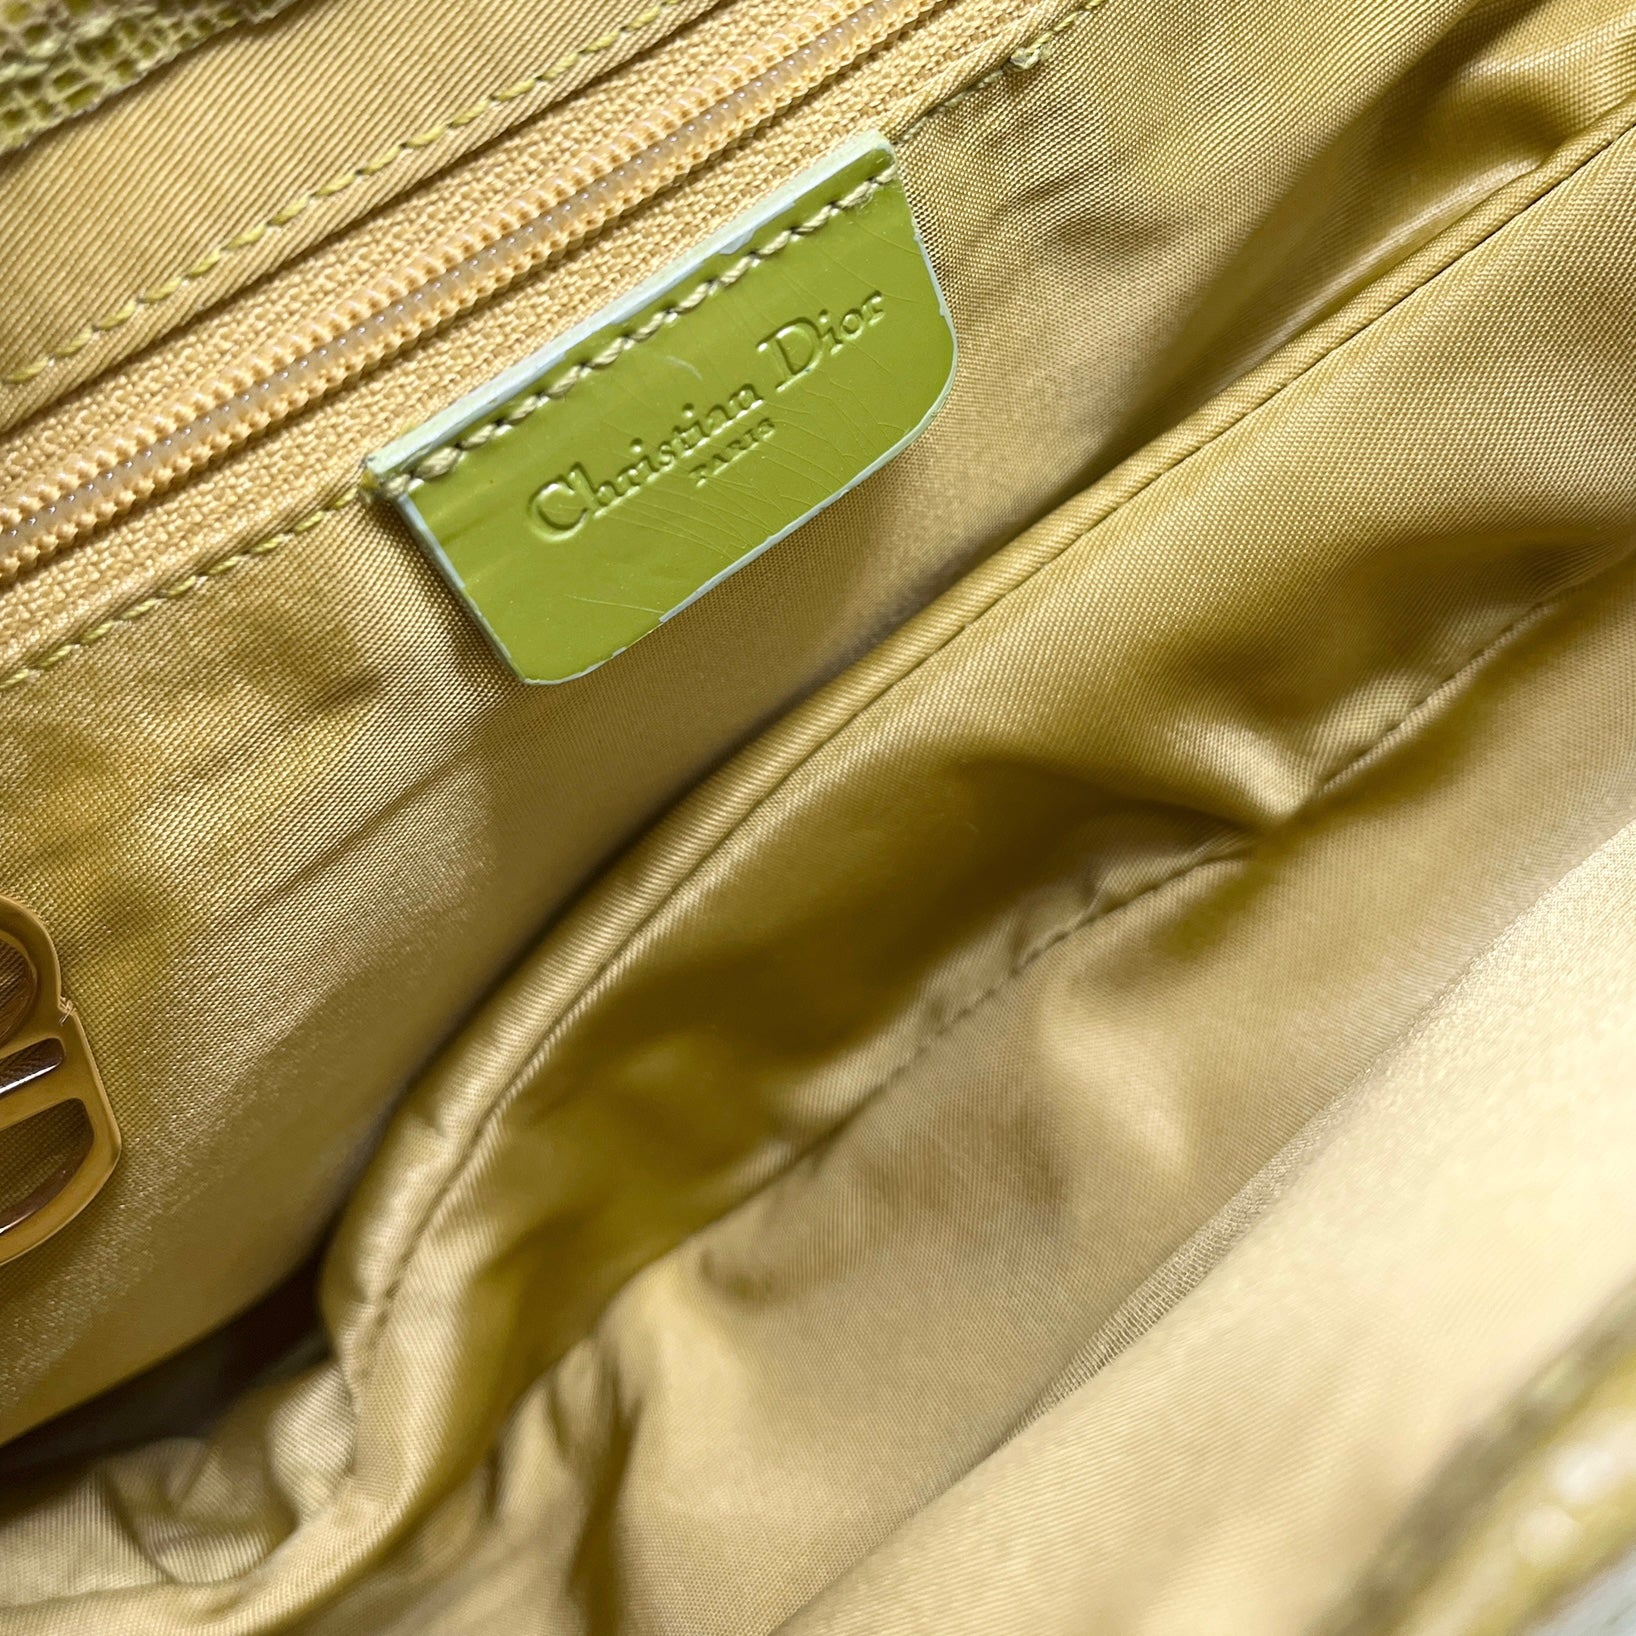 Dior Lime Green Leather Saddle Bag